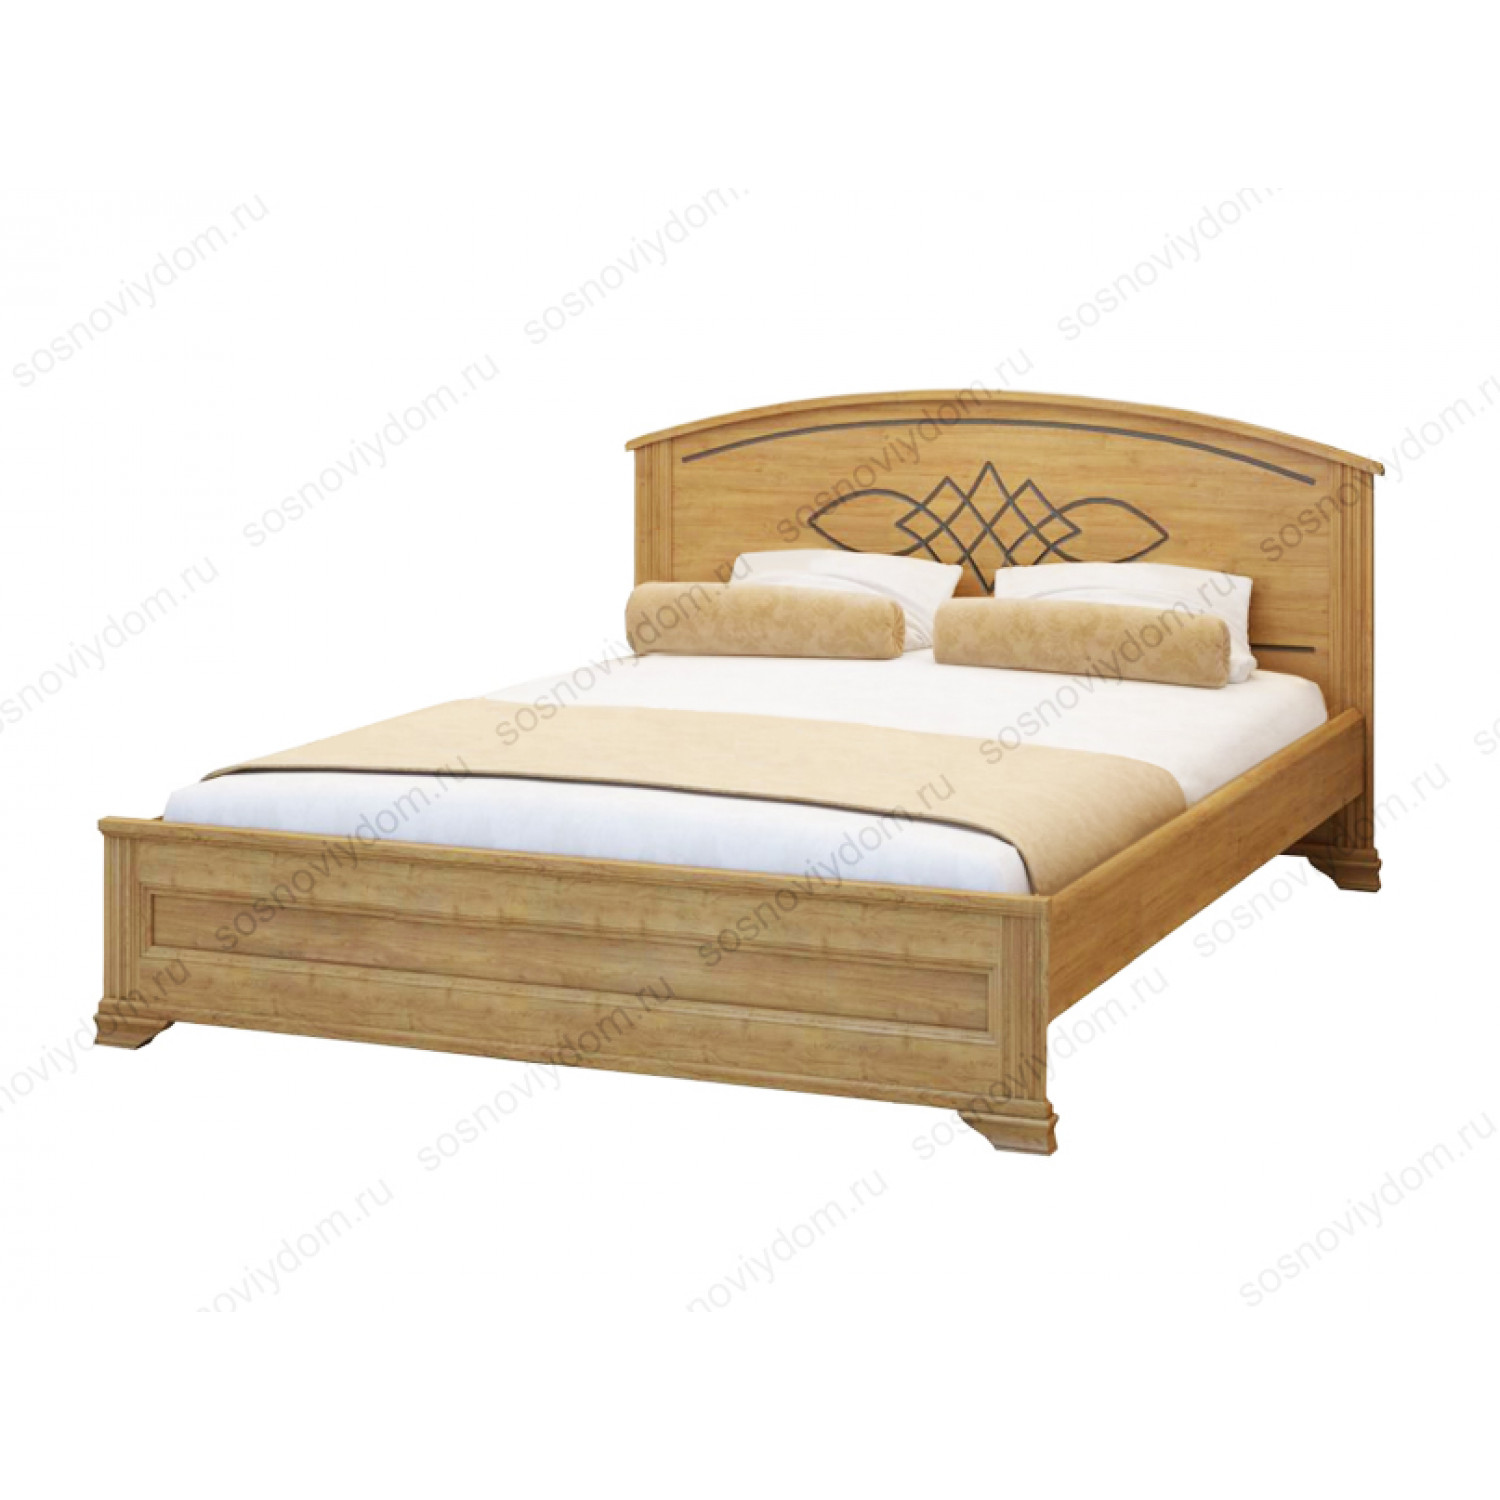 Купить кровать из массива в спб. Кровать двуспальная Шатура мебель 160х200.